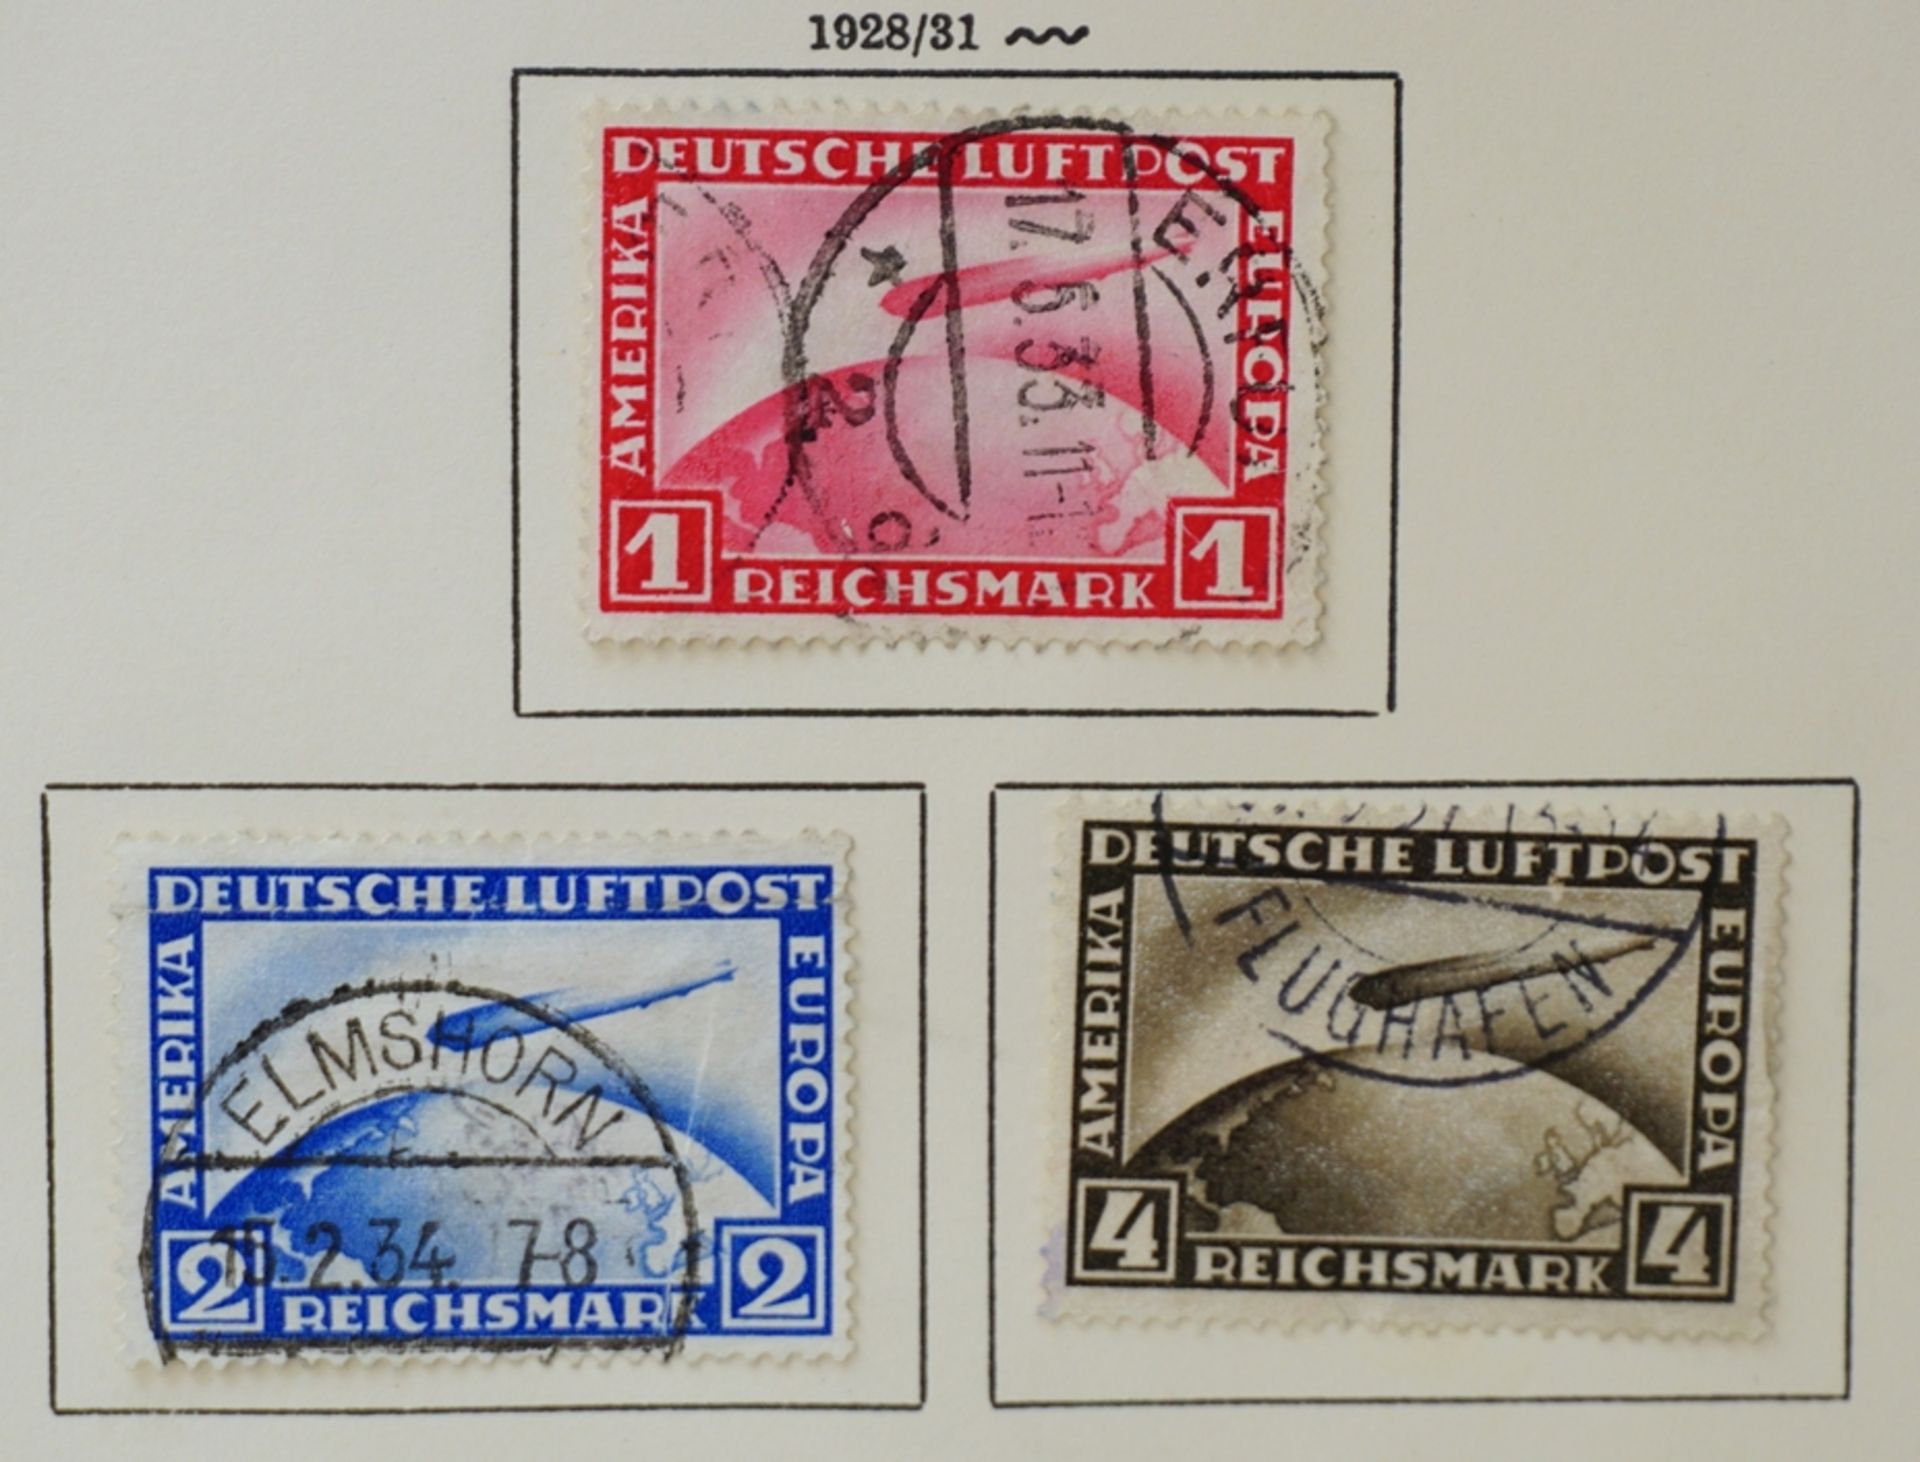 Dt.Reich: Flugpostmarke Luftschiff, 2 und 4 RM, 20.09.1928, Flugpostmarke Luftschiff, 1 RM